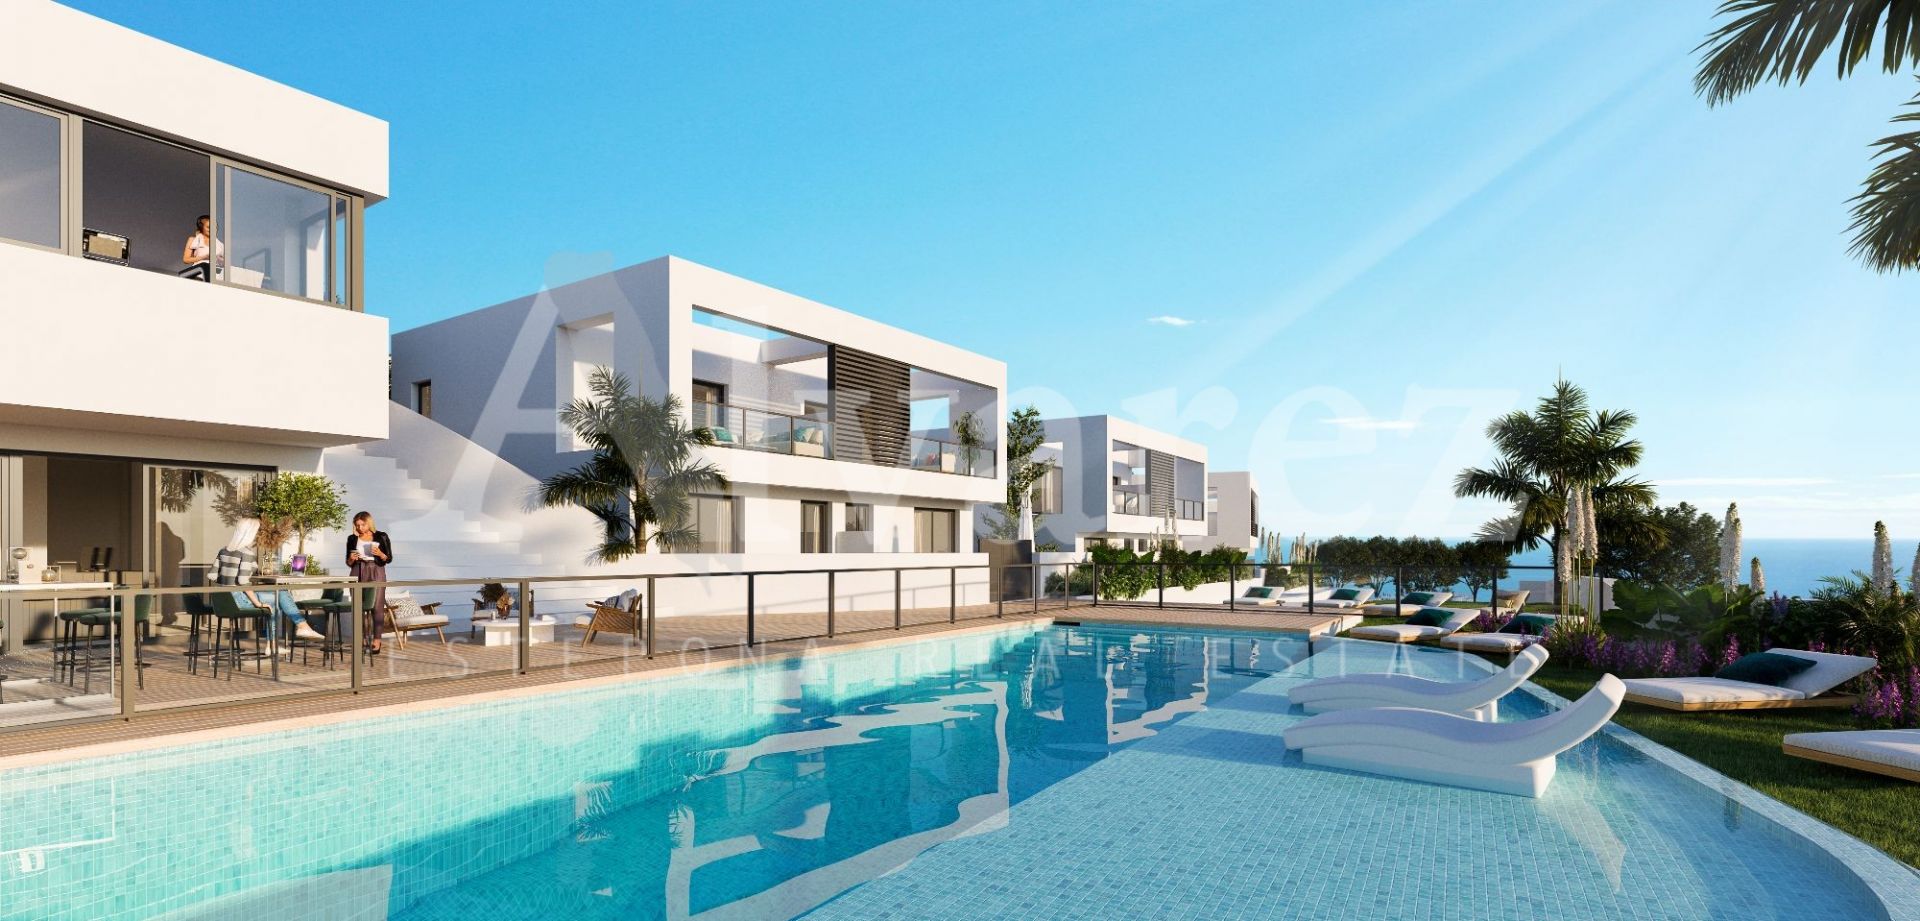 Development in Riviera del Sol, Mijas Costa